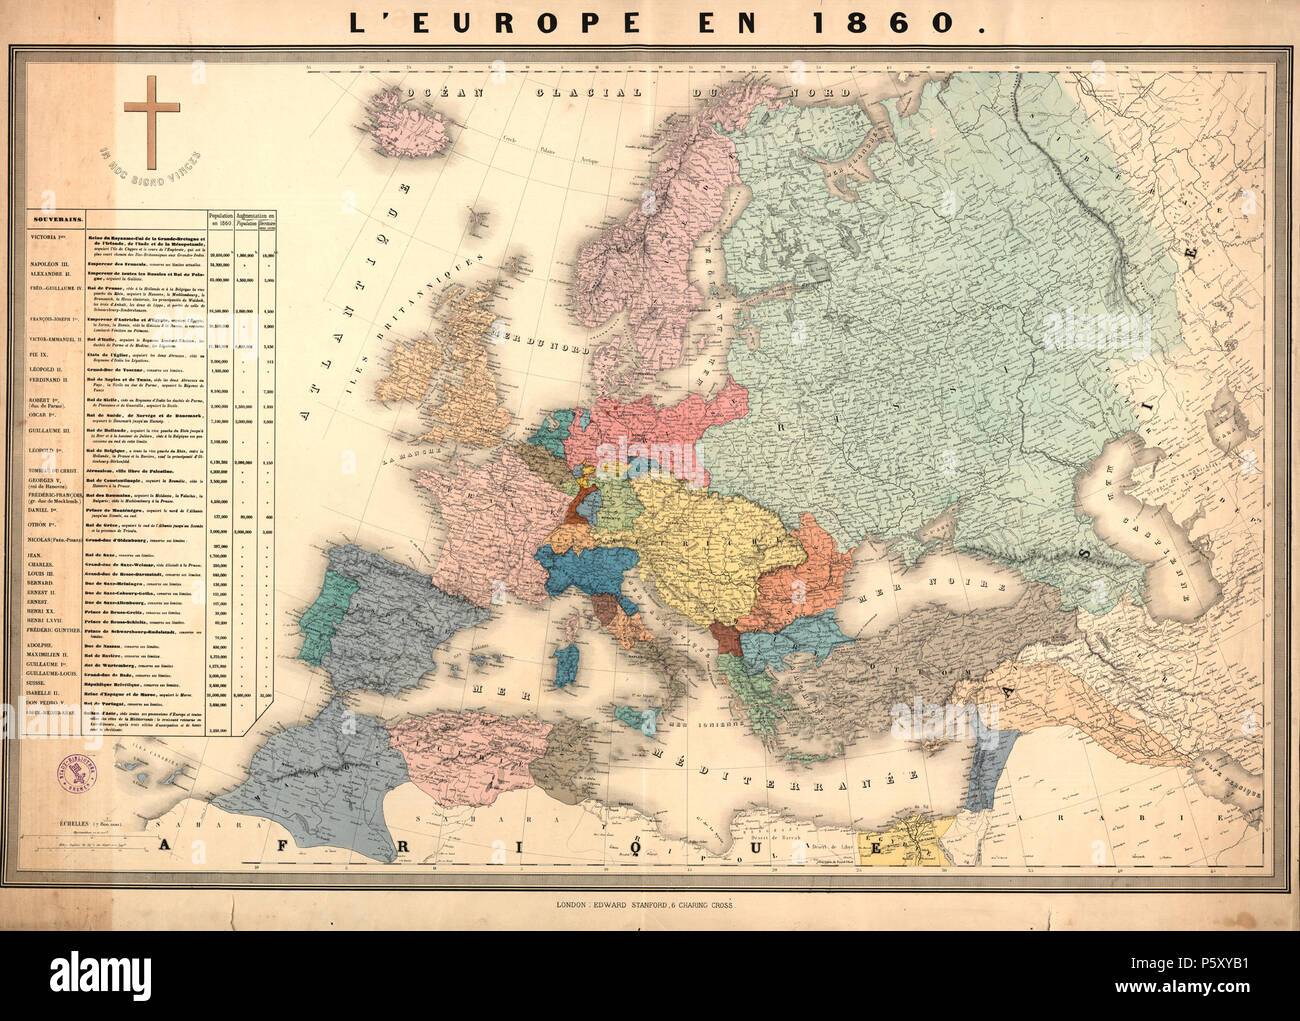 L'Europe en 1860. Inglés: Un mapa por Edward Stanford mostrar a Europa en 1860. . Circa 1860. N/A 495 Edward Stanford, L'Europe en 1860, 245551 original Foto de stock